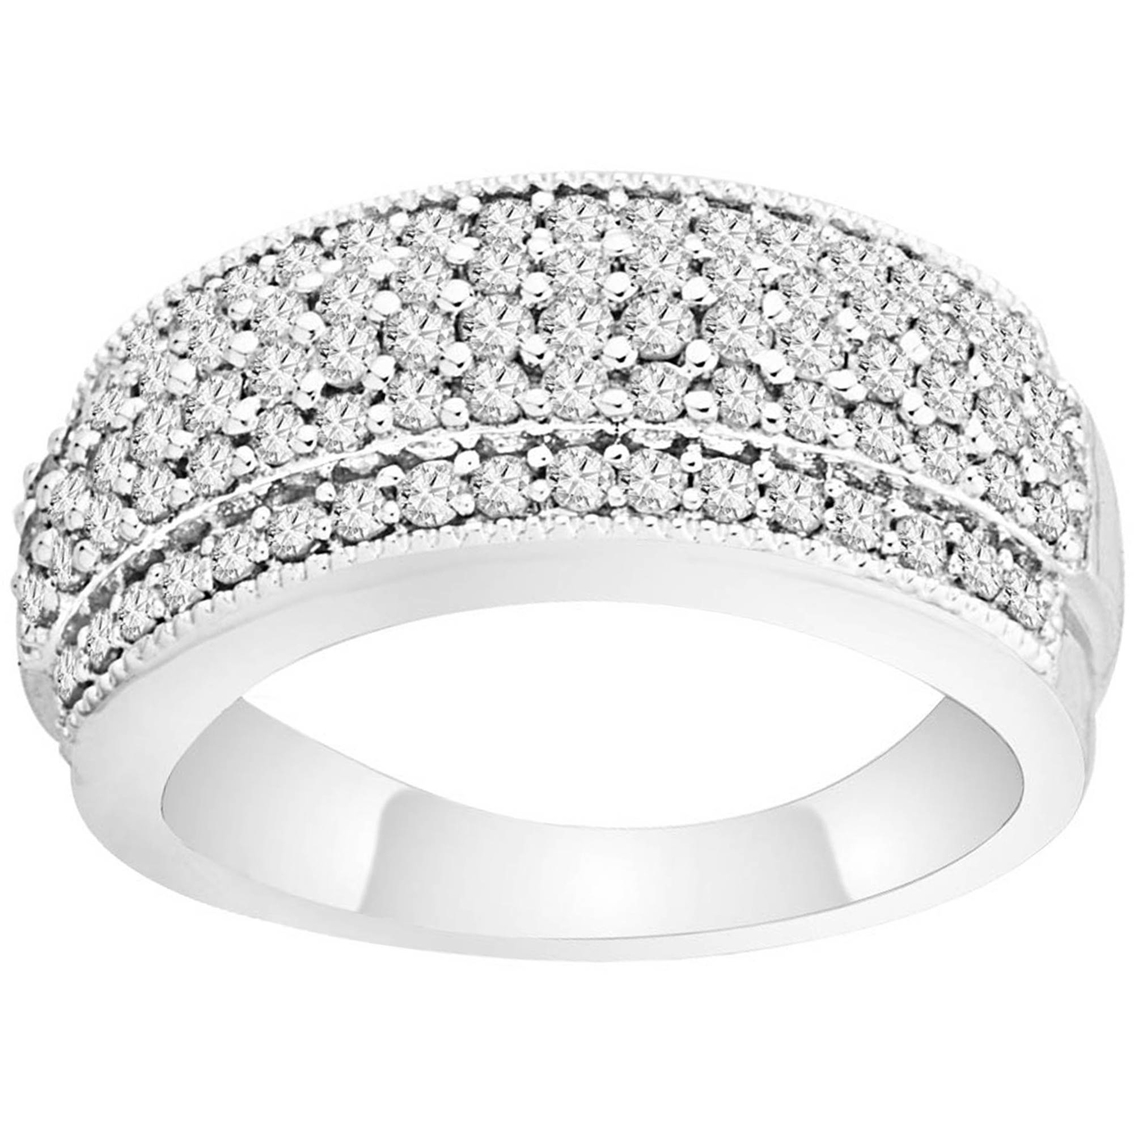 10k White Gold 1 Ctw Diamond Anniversary Ring, Size 7 Anniversary